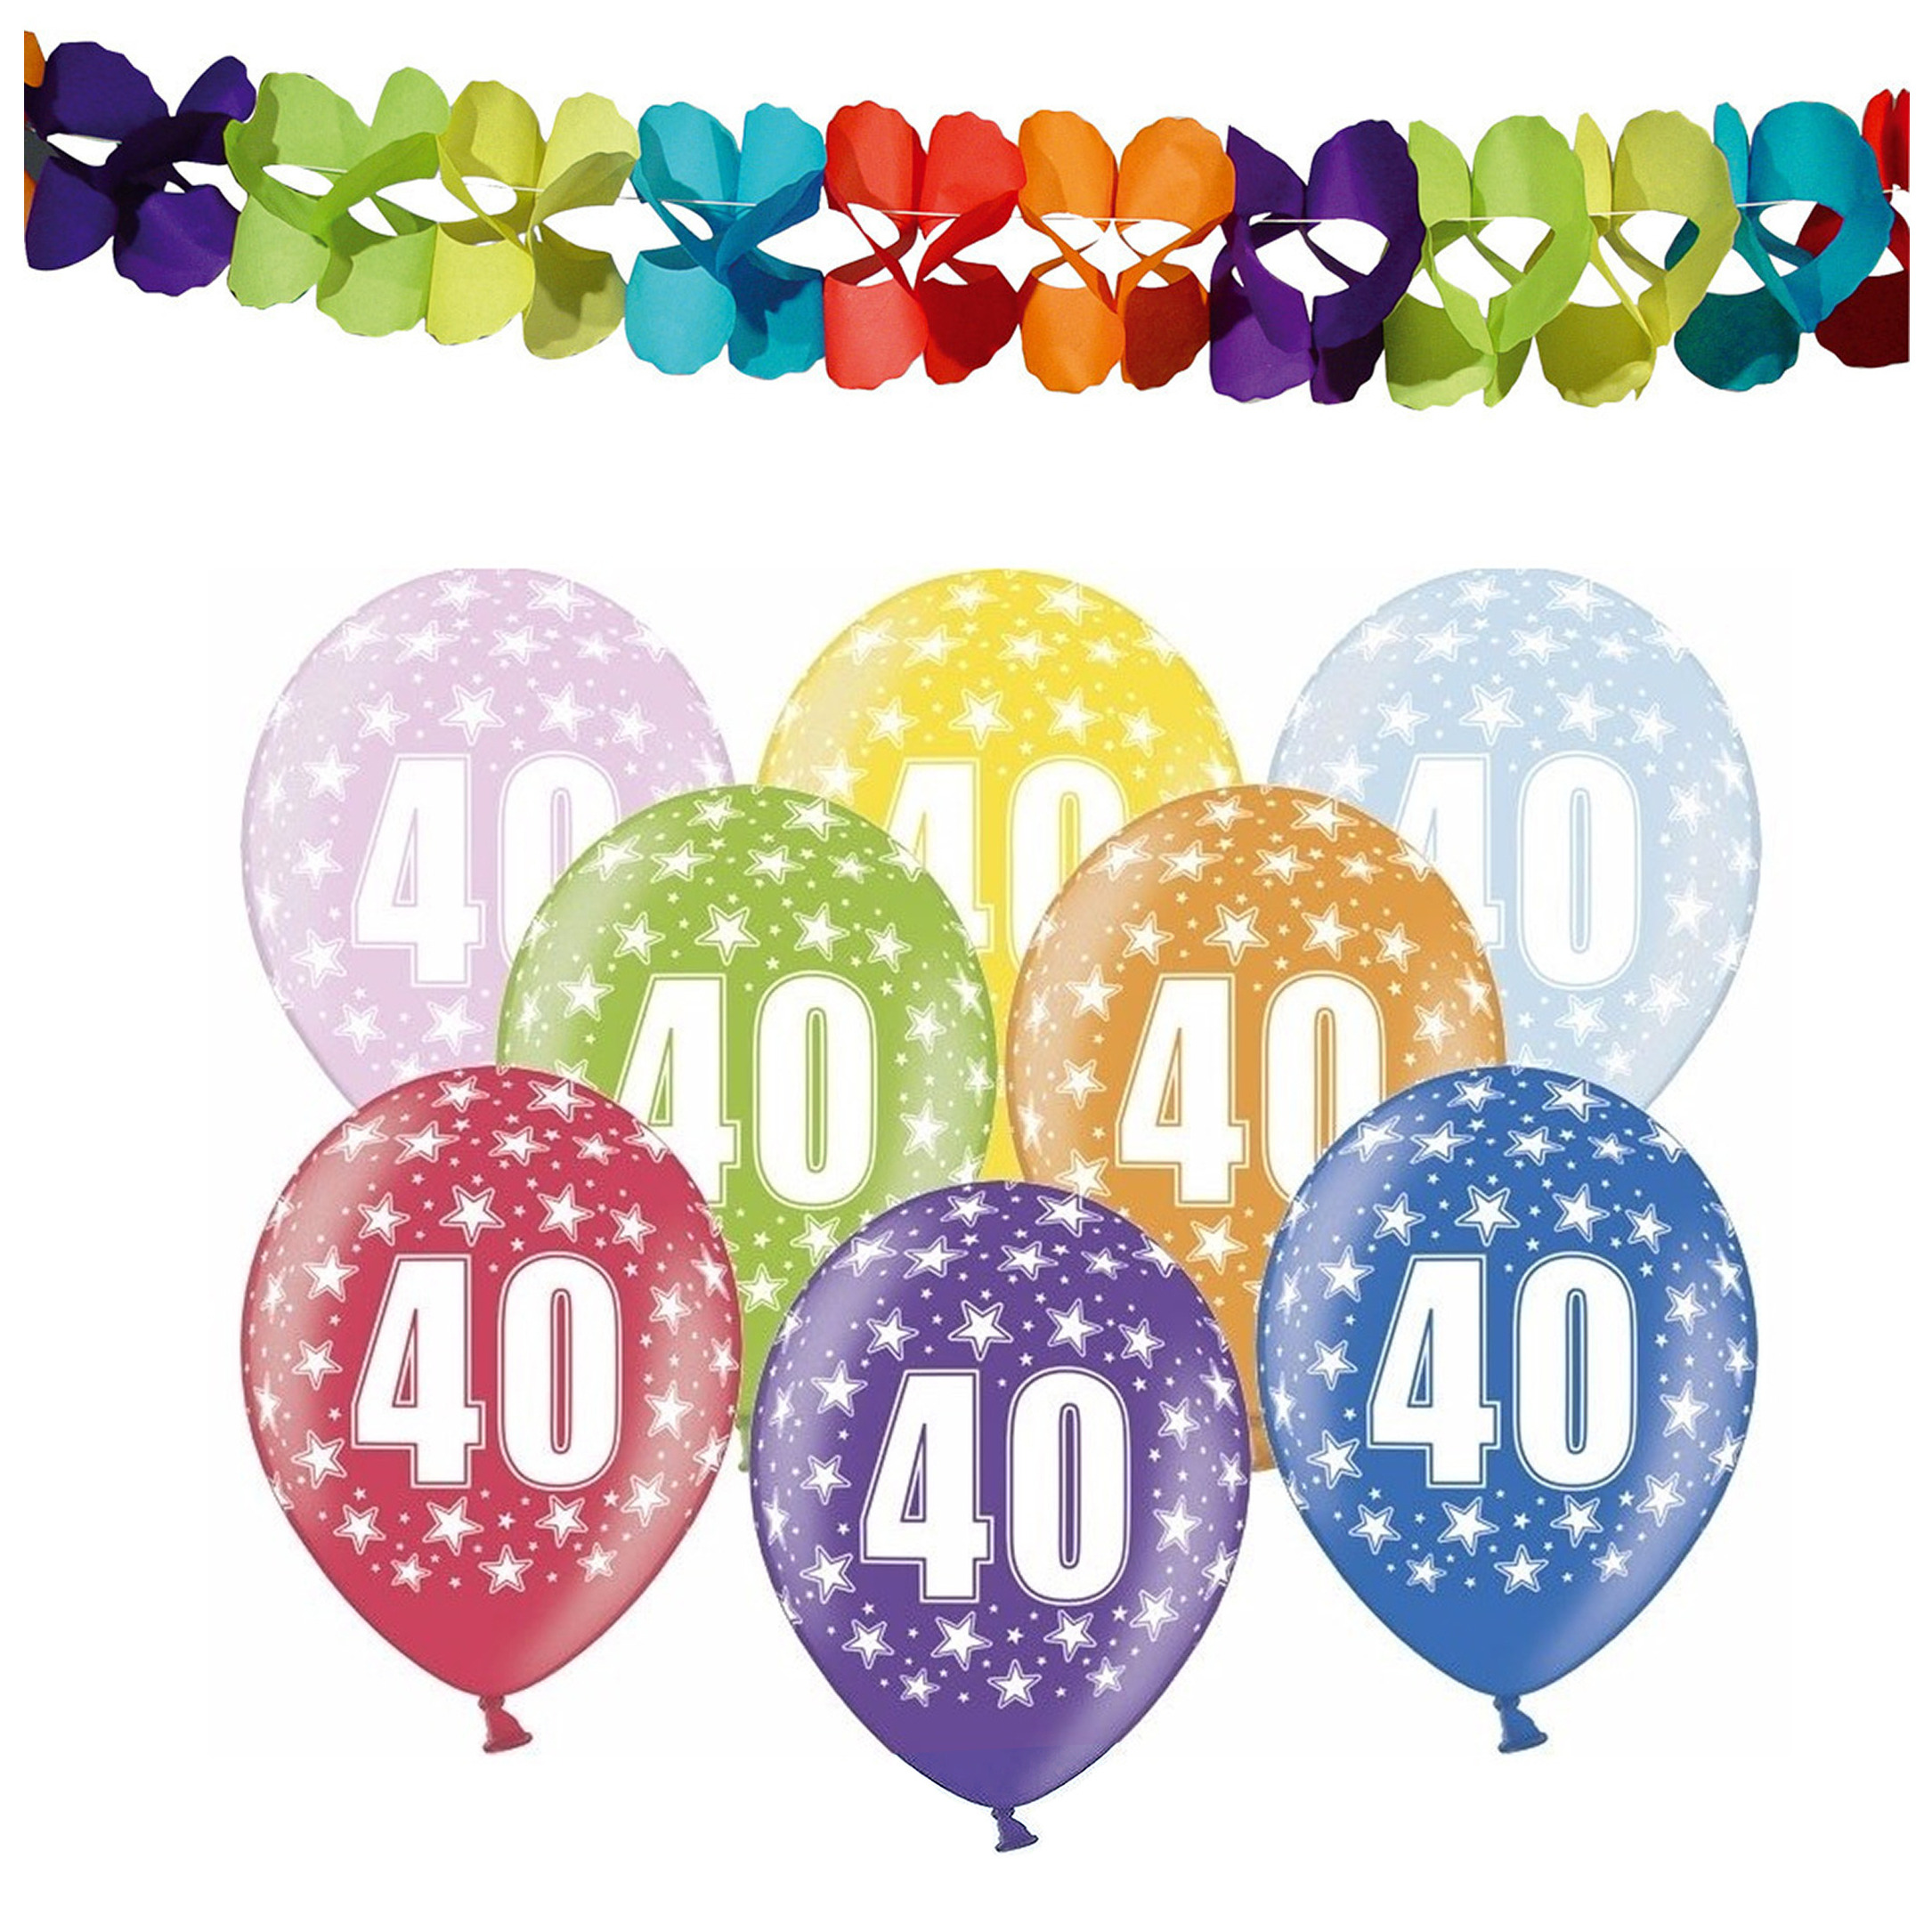 Partydeco 40e jaar verjaardag feestversiering set - Ballonnen en slingers